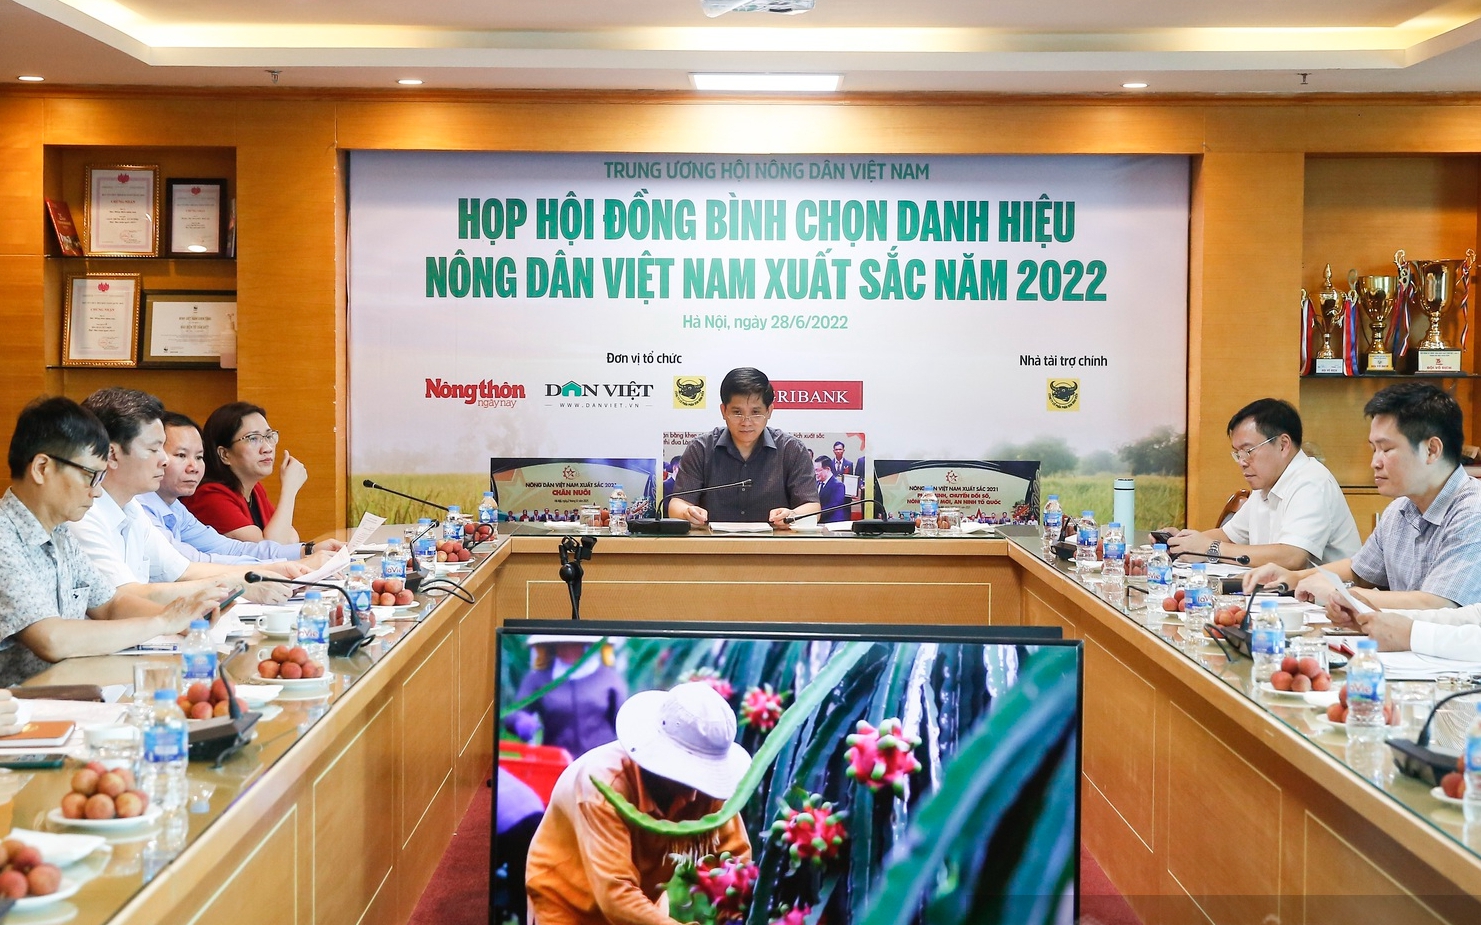 Hình ảnh họp Hội đồng bình chọn danh hiệu Nông dân Việt Nam xuất sắc năm 2022